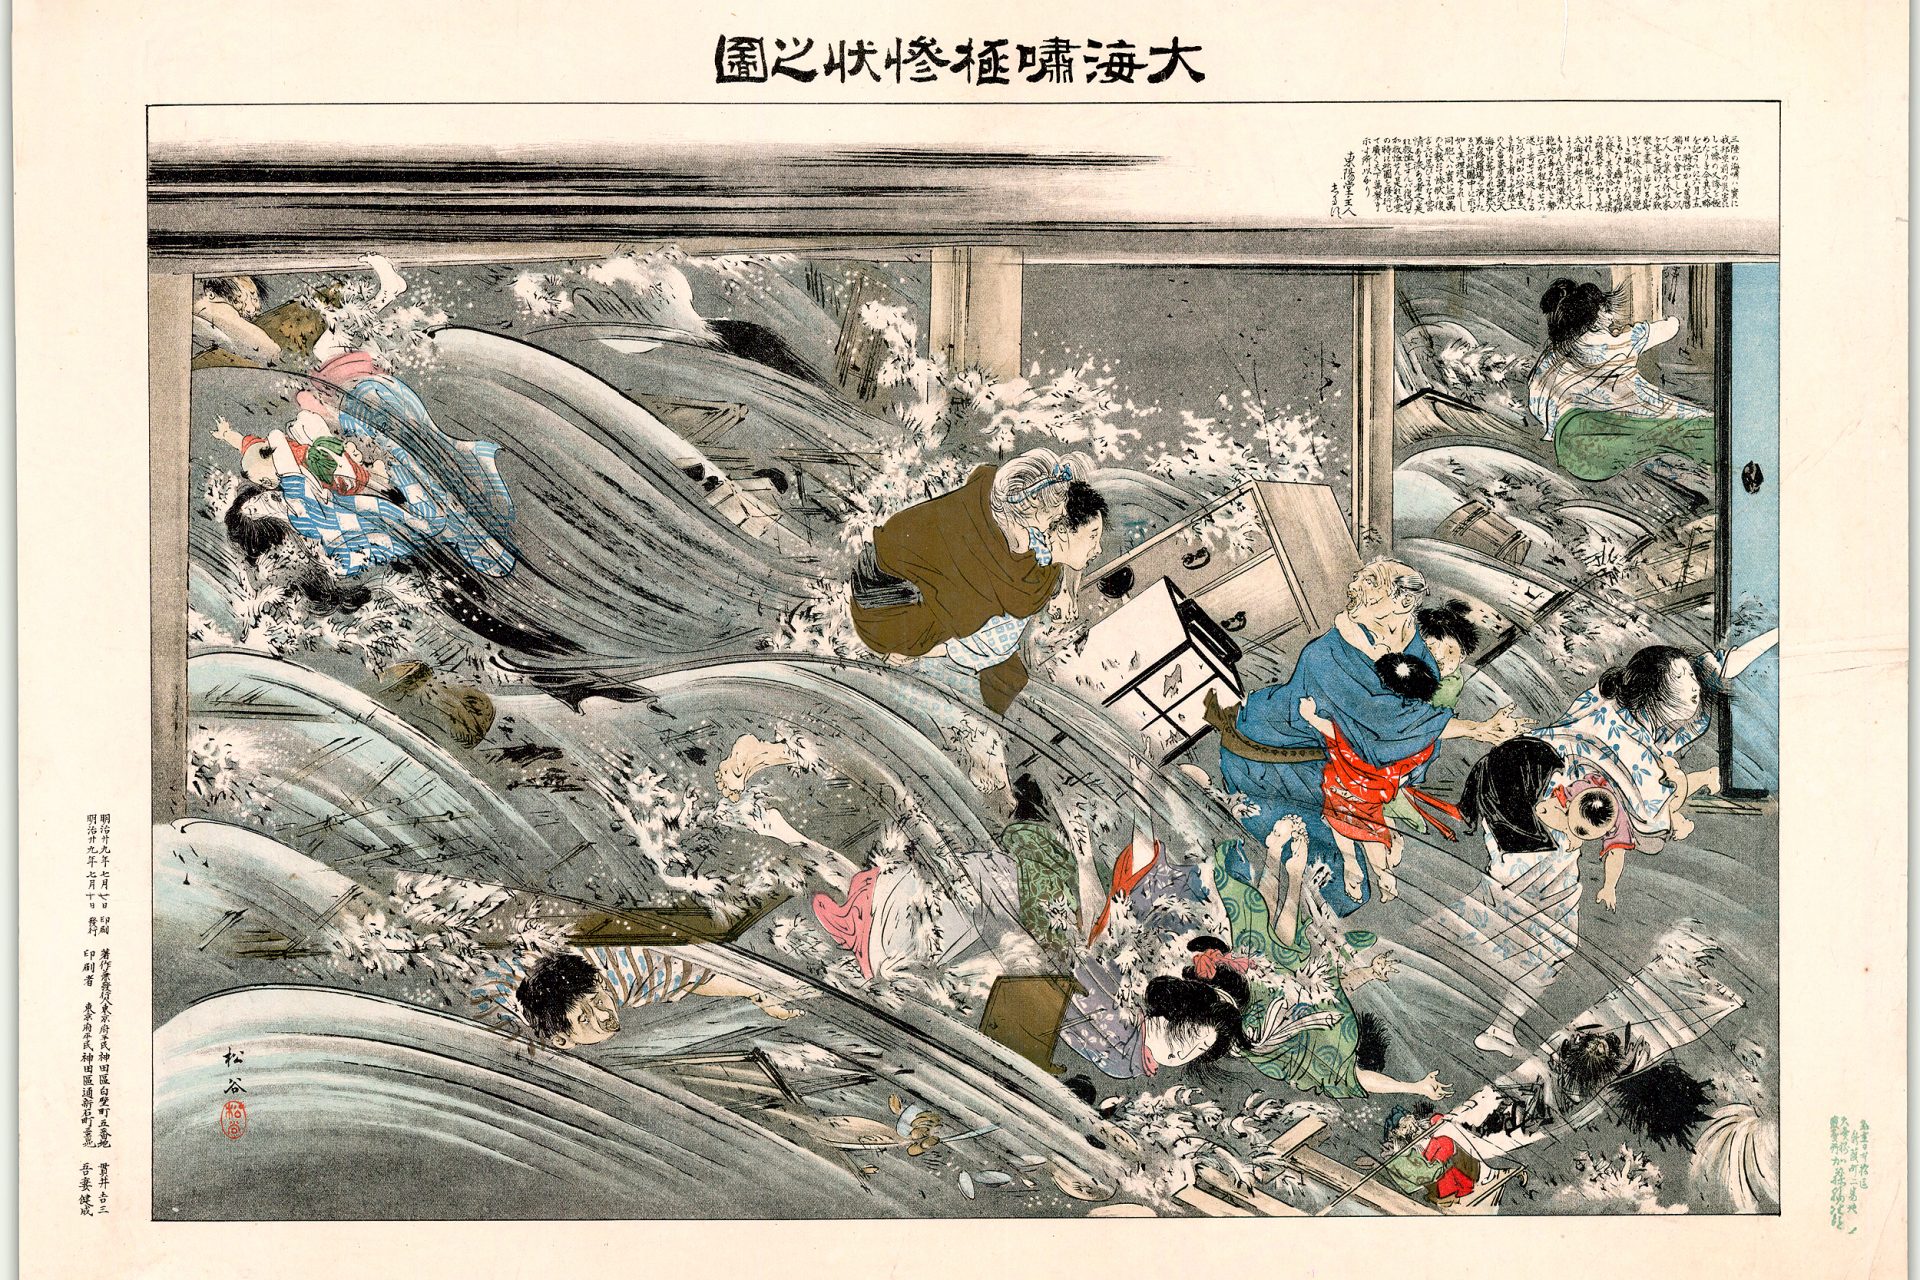 09. The Sanriku Earthquake of 869